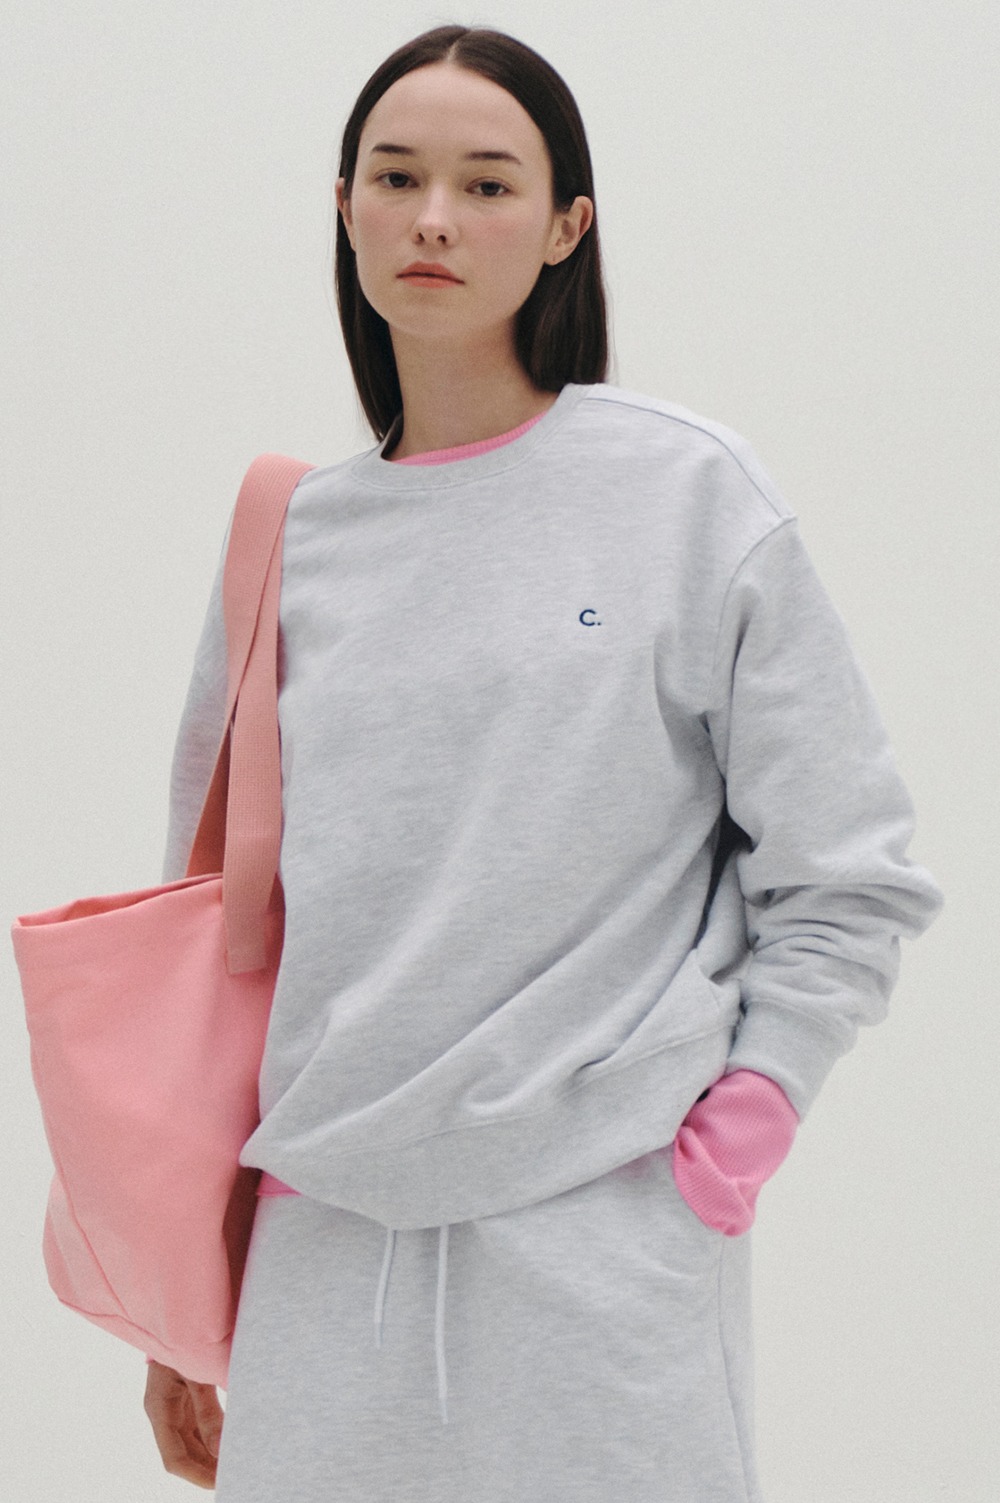 clove - [23SS clove] New Active Sweatshirt_Women (Light Grey)